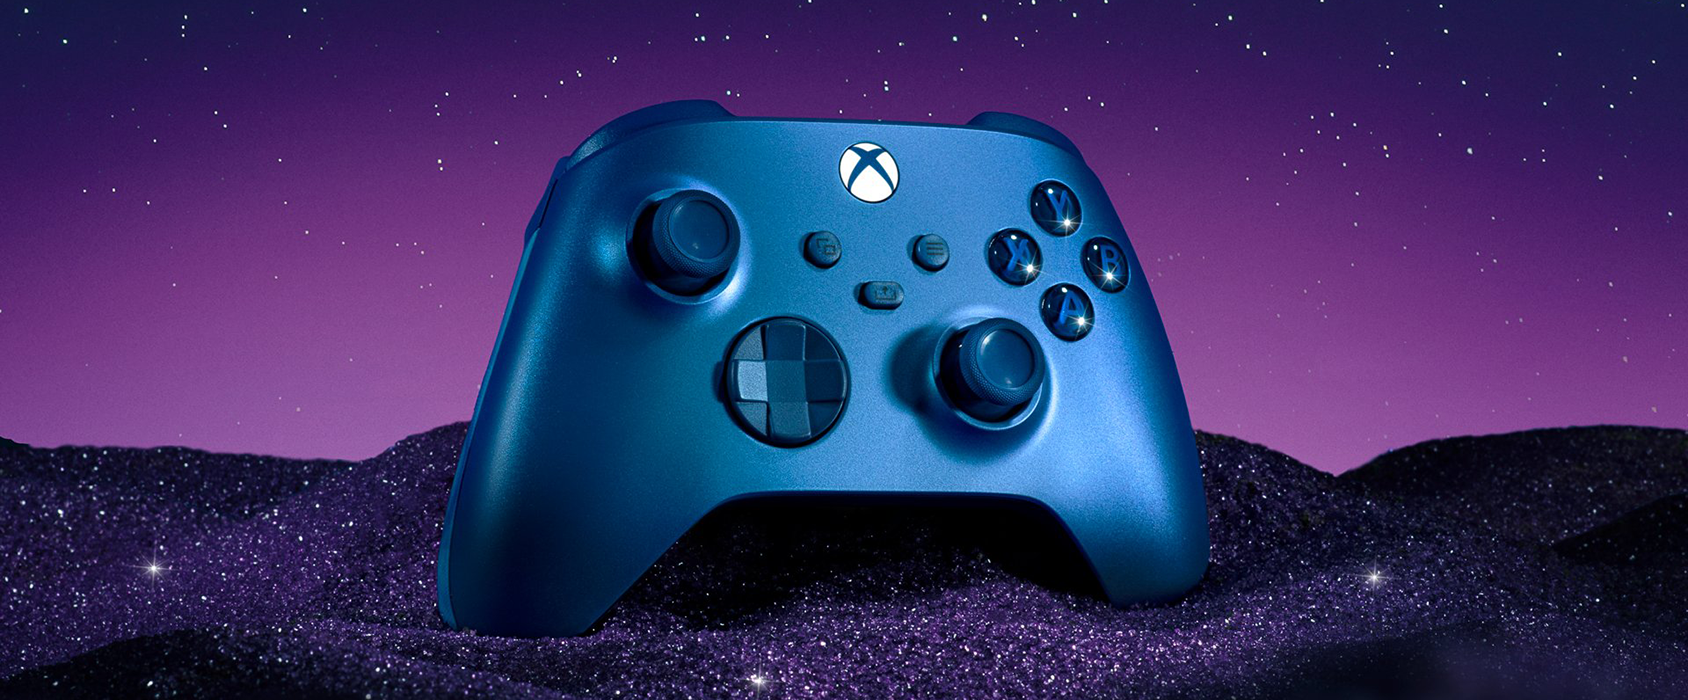 مايكروسوفت تكشف عن ذراع تحكم Xbox الجديد باللون الأزرق ومقابض مطاطية